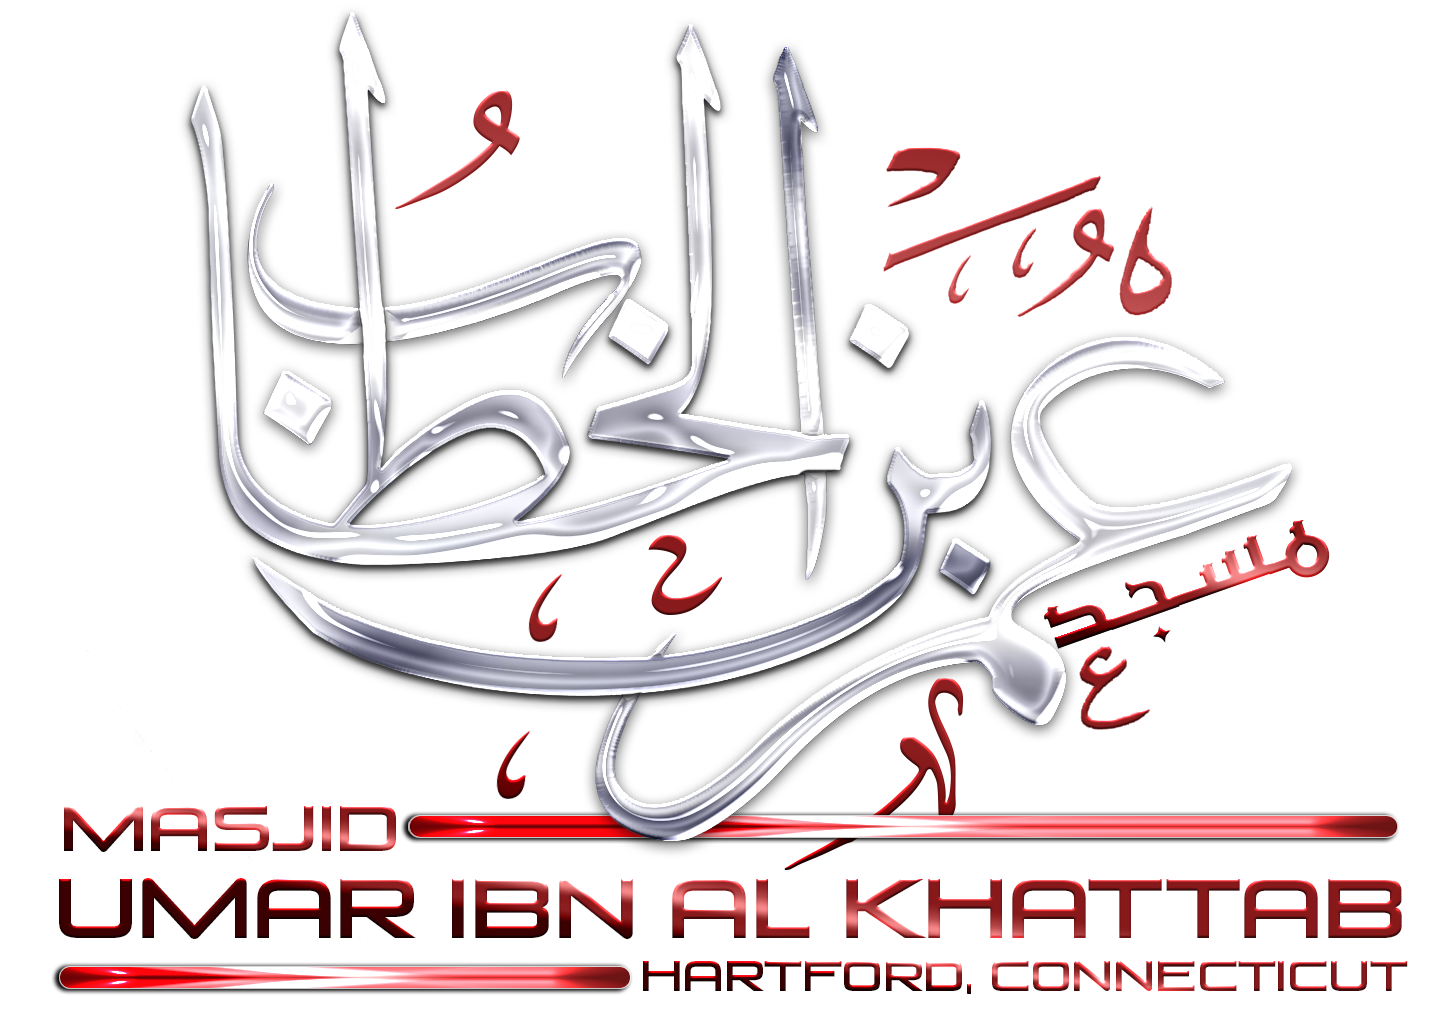 Masjid Umar Ibn Al-Khattab logo